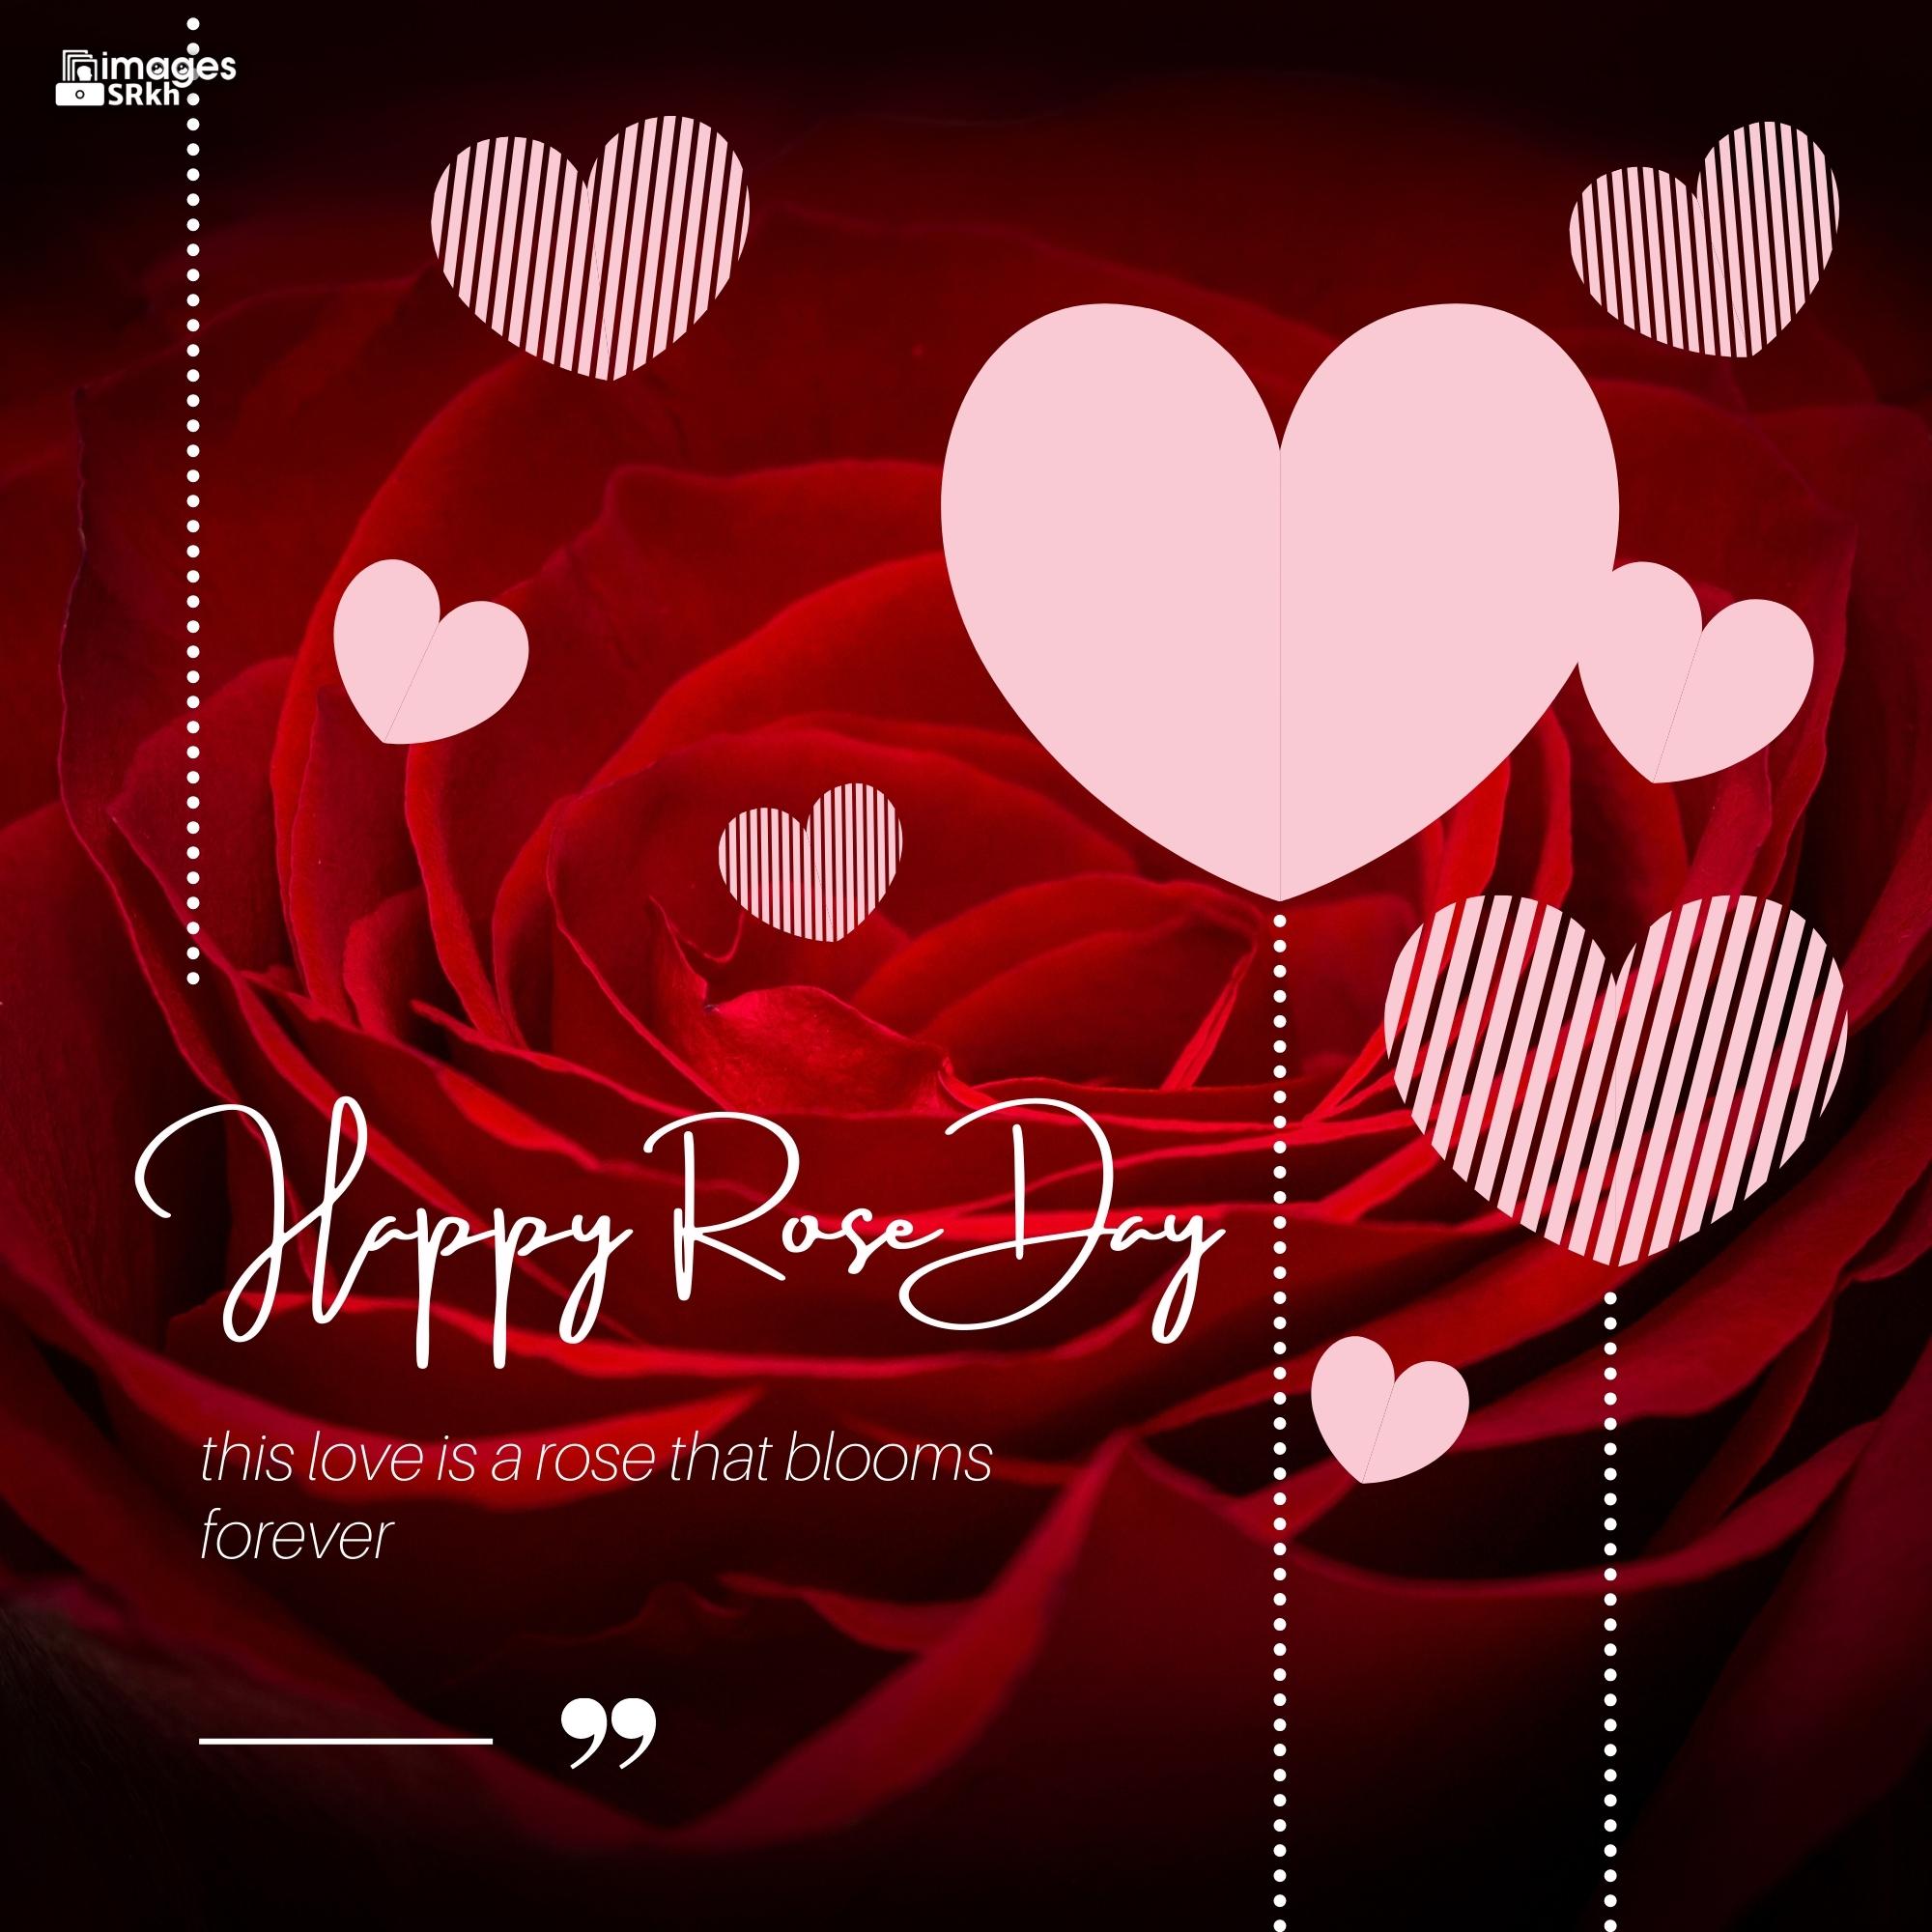 Rose Day Wishing Image Hd Download (4)